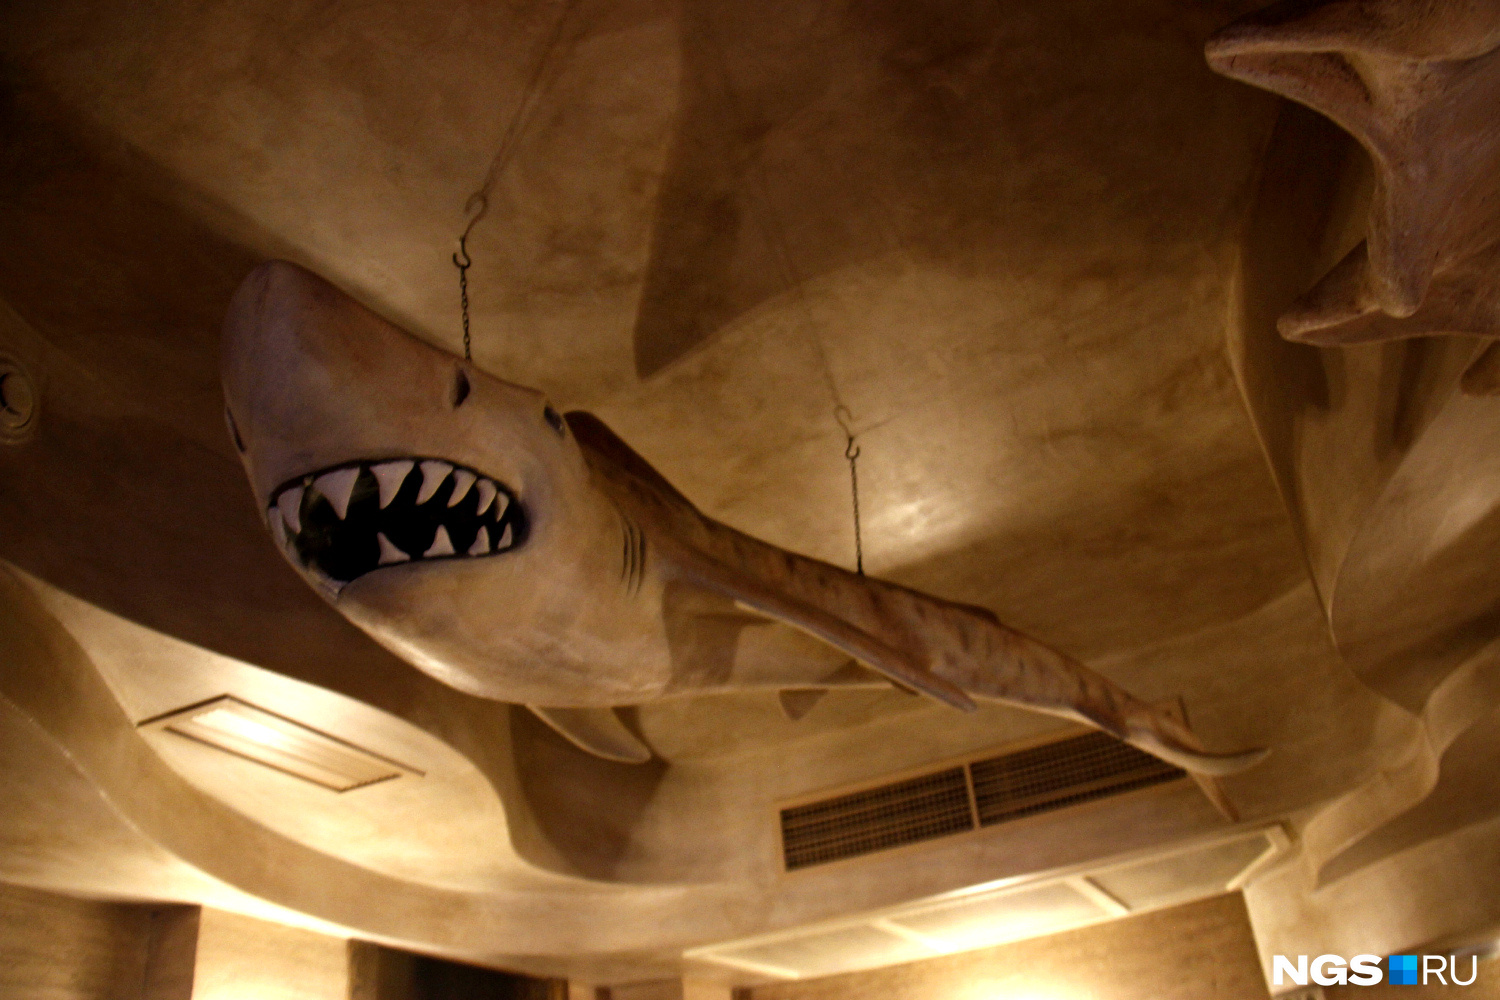 Фигура акулы под потолком осталась от прежнего ресторана